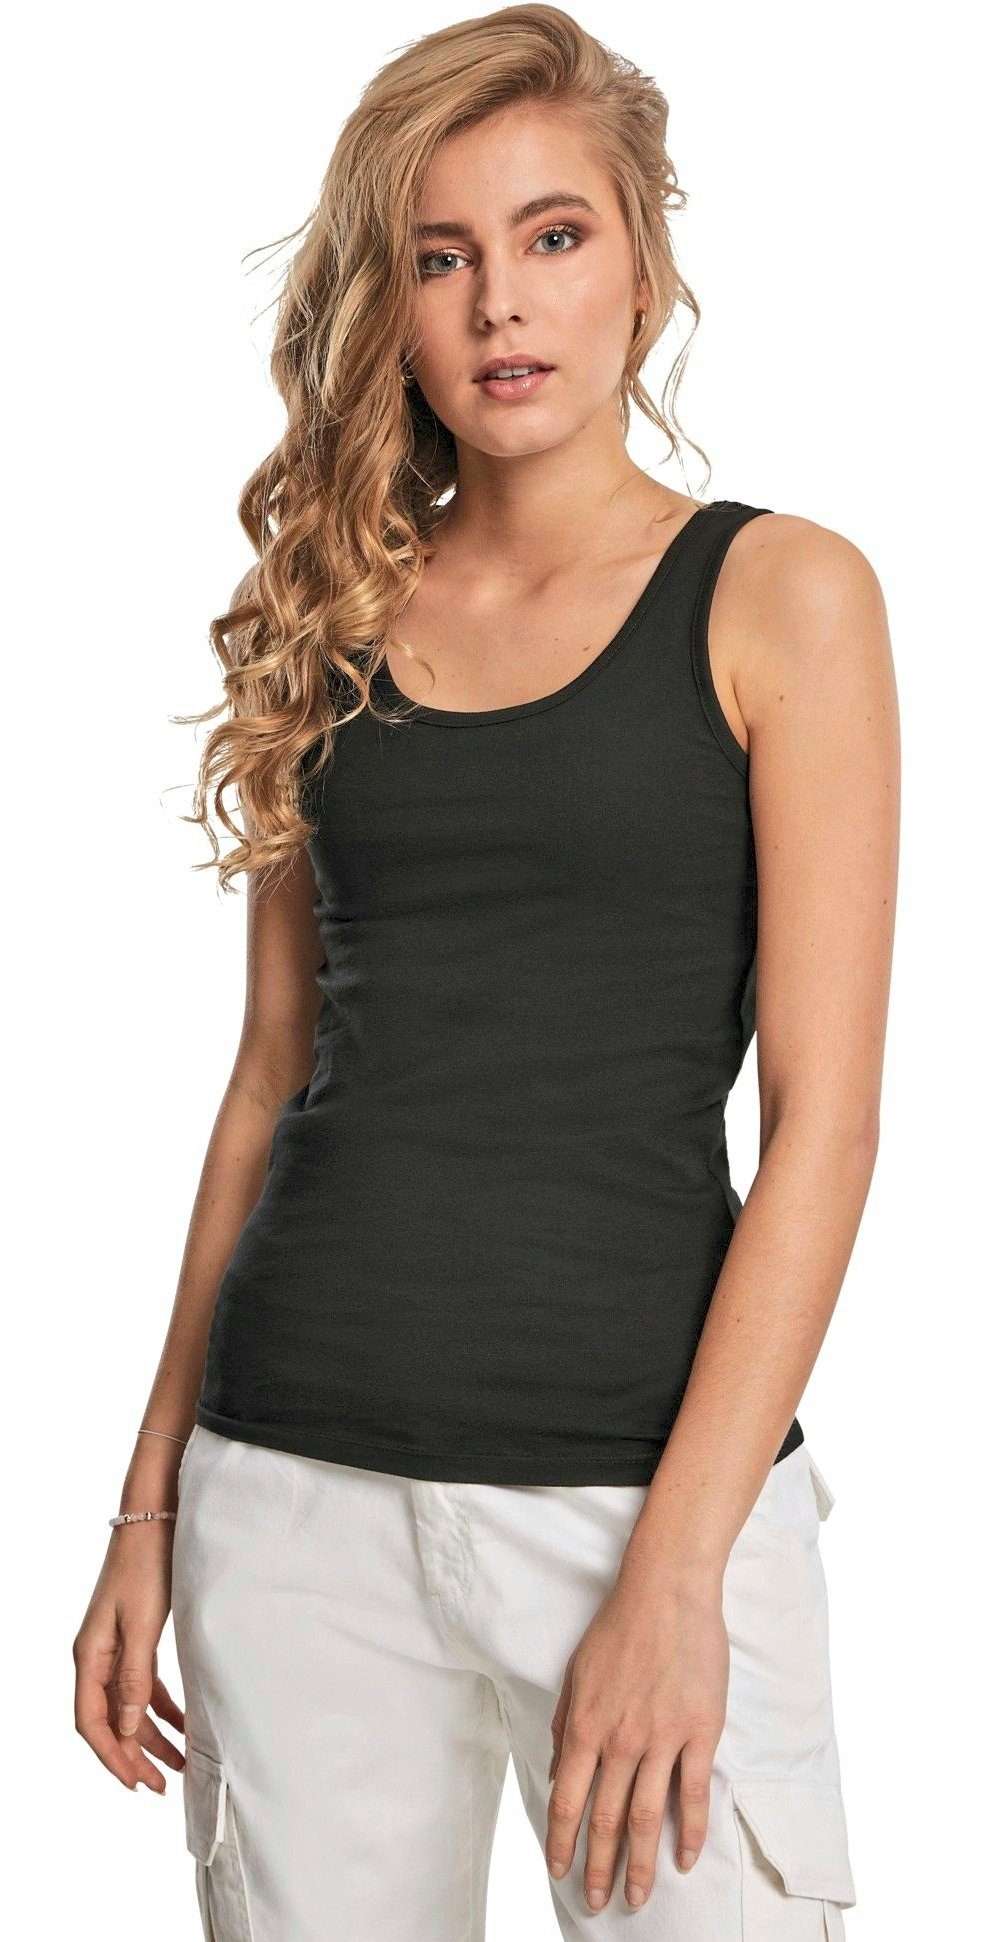 Майка, комплект из 1/2/3 женских рубашек без рукавов/майки для женщин (1 шт.), размеры от XS до 3XL